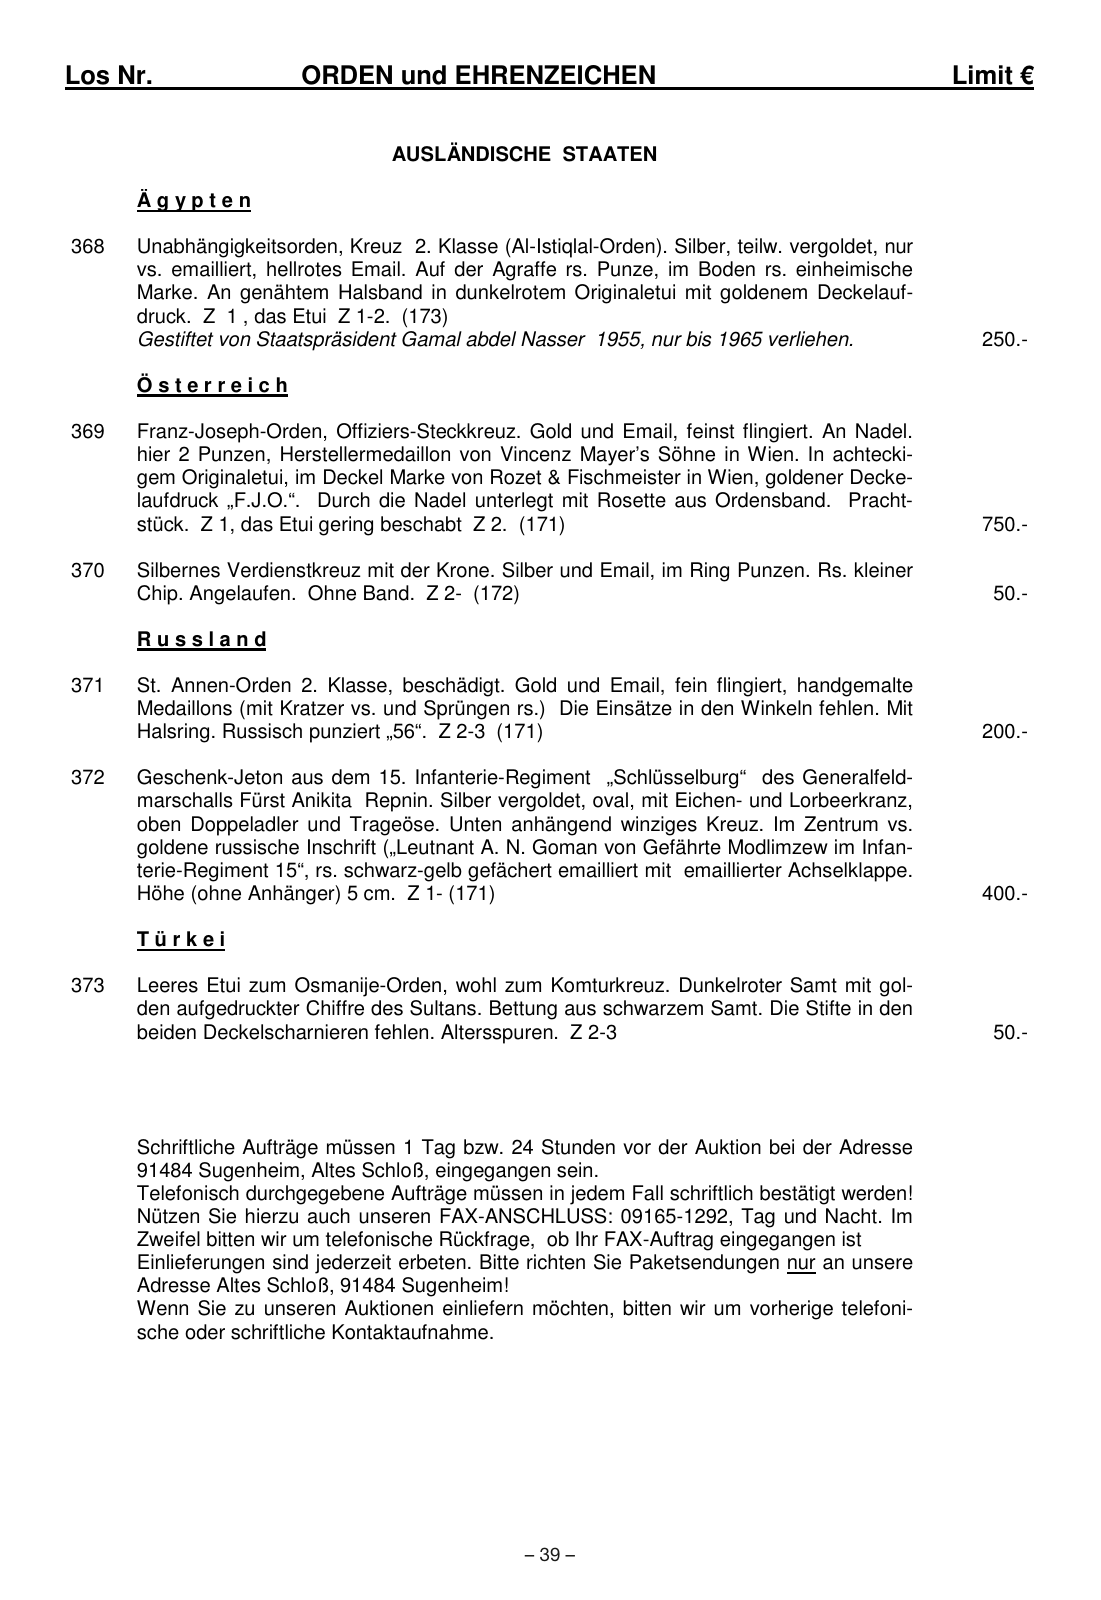 Vorschau Katalog 2 Sonderauktion vom 28. März 2020 Seite 41